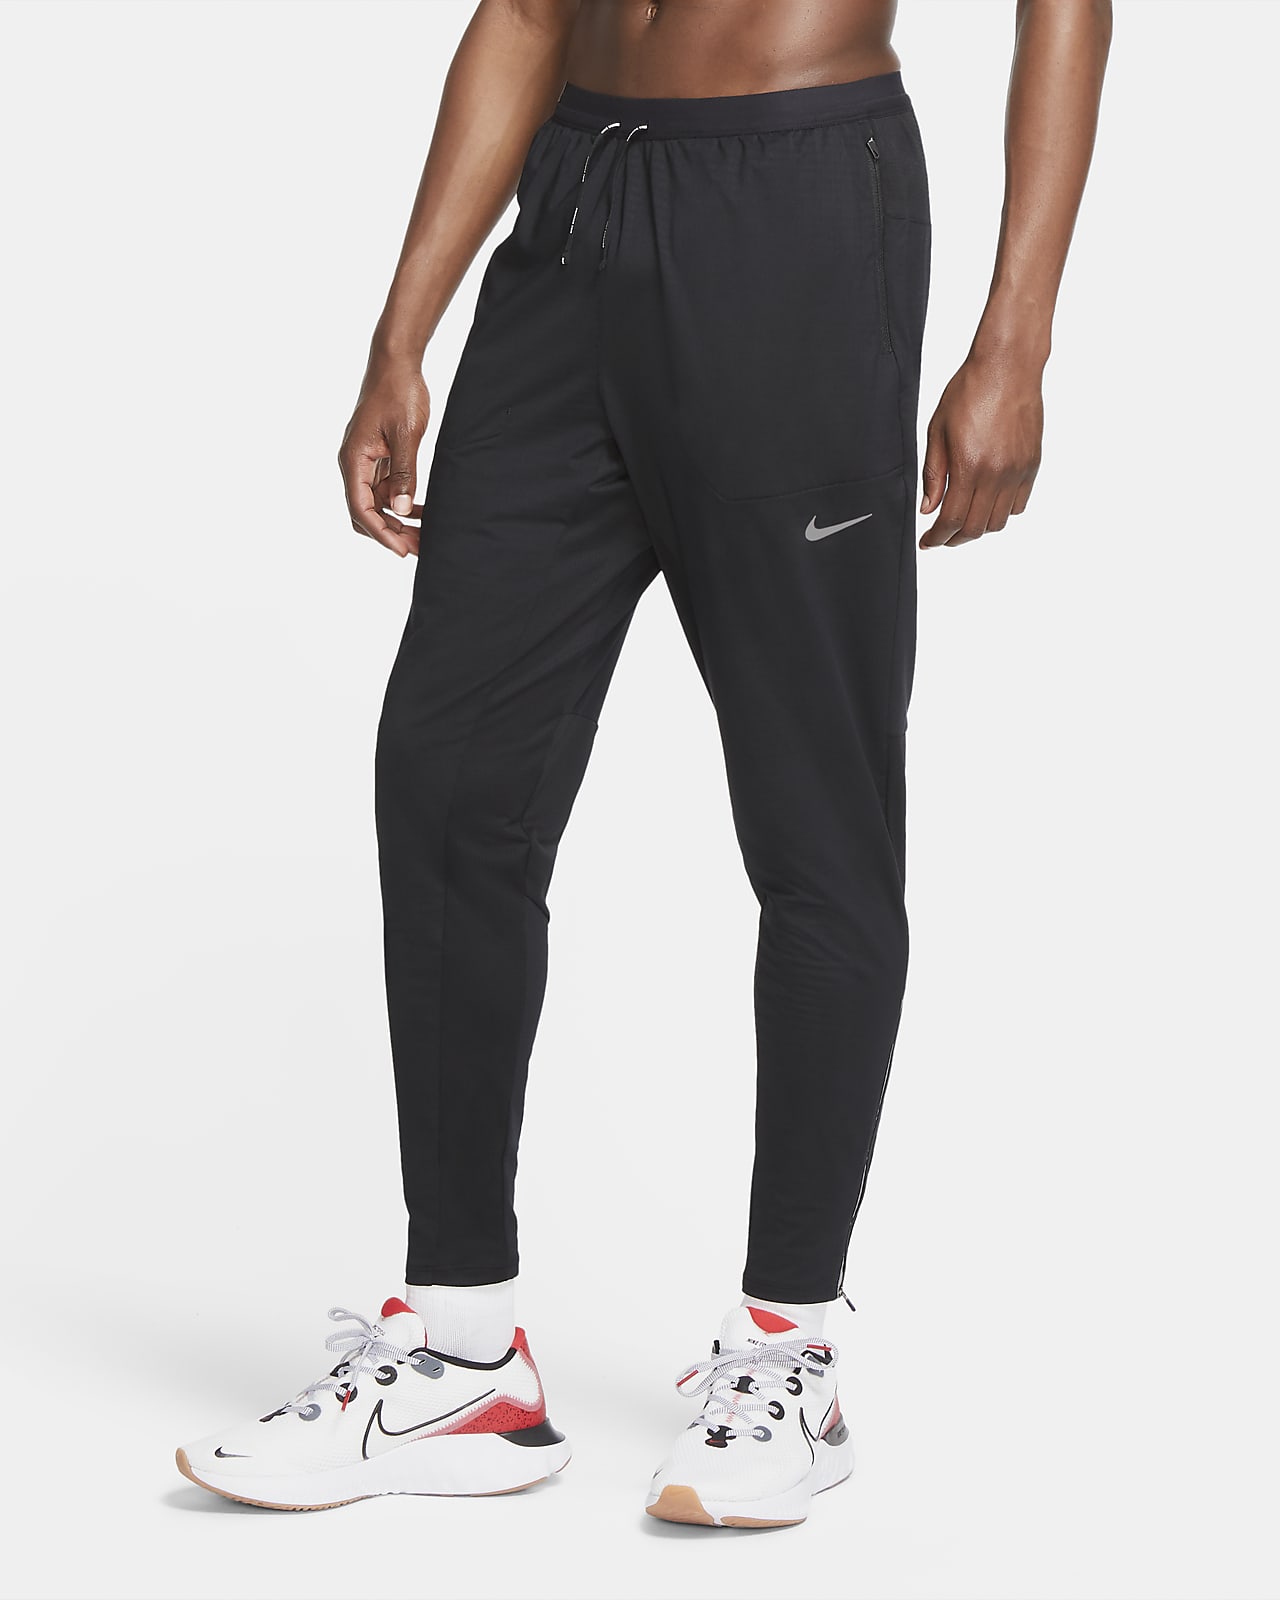 The Best Nike Running Trousers. Nike LU